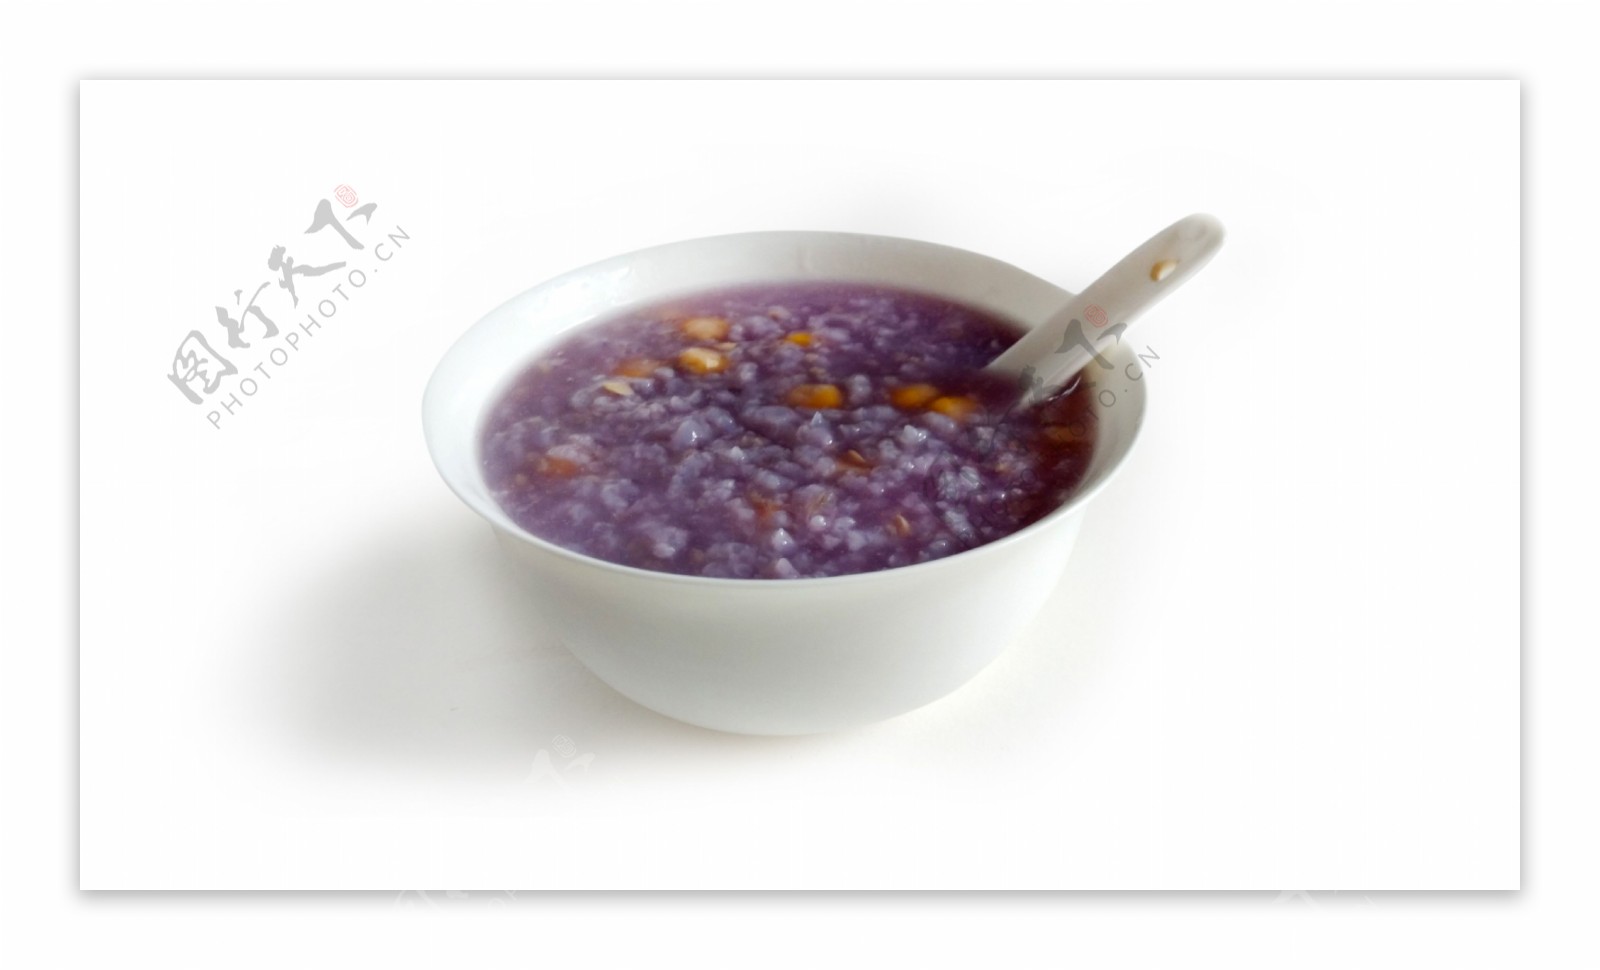 紫薯粥玉米紫薯图片